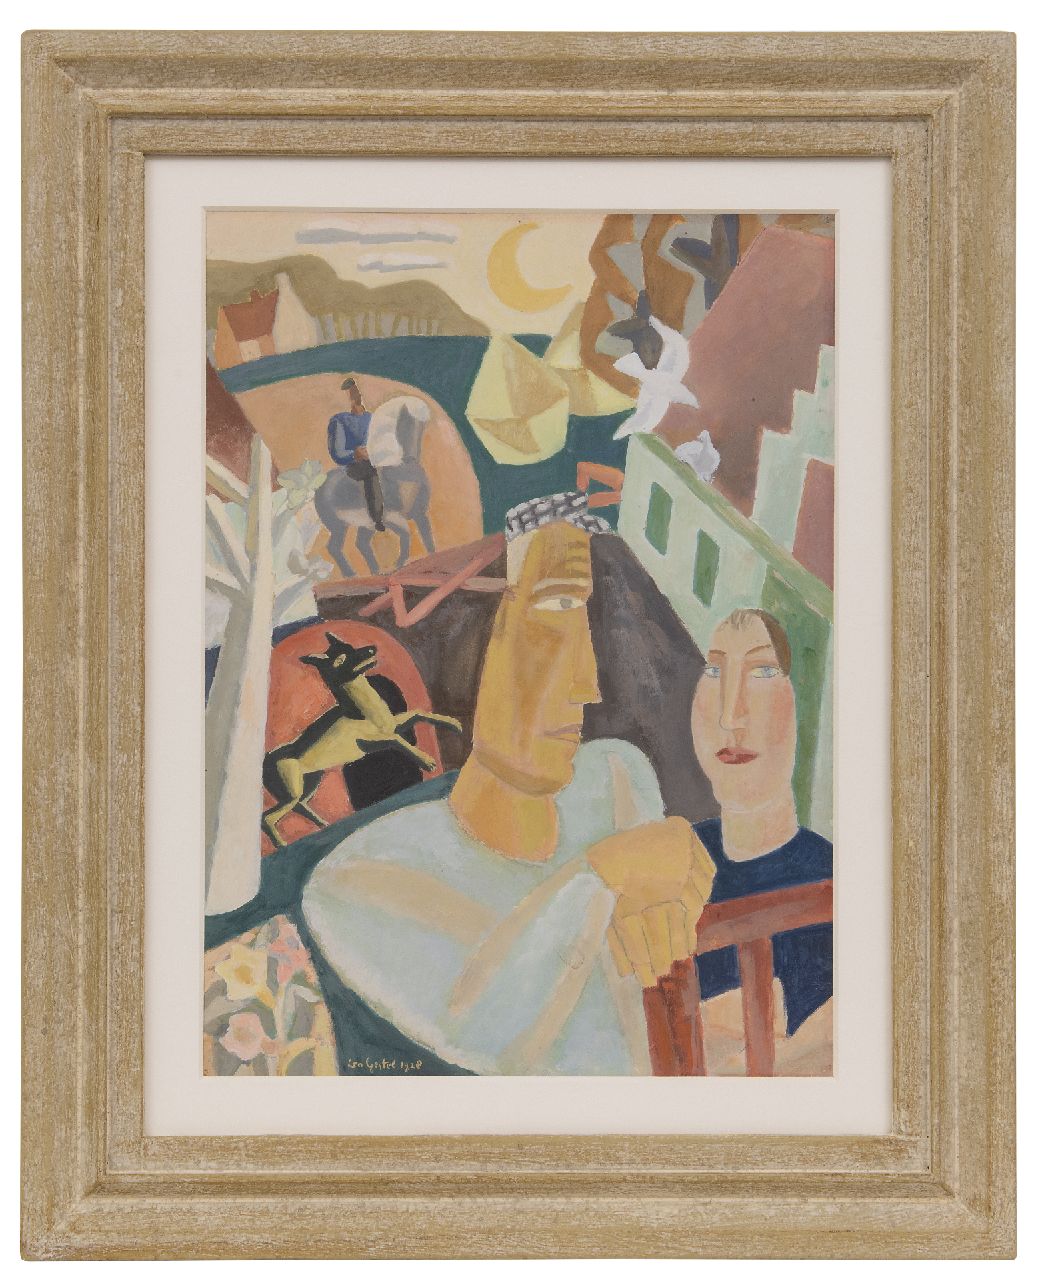 Gestel L.  | Leendert 'Leo' Gestel, Man en vrouw met op de achtergrond een ruiter, gouache op papier 37,2 x 27,0 cm, gesigneerd linksonder en gedateerd 1928